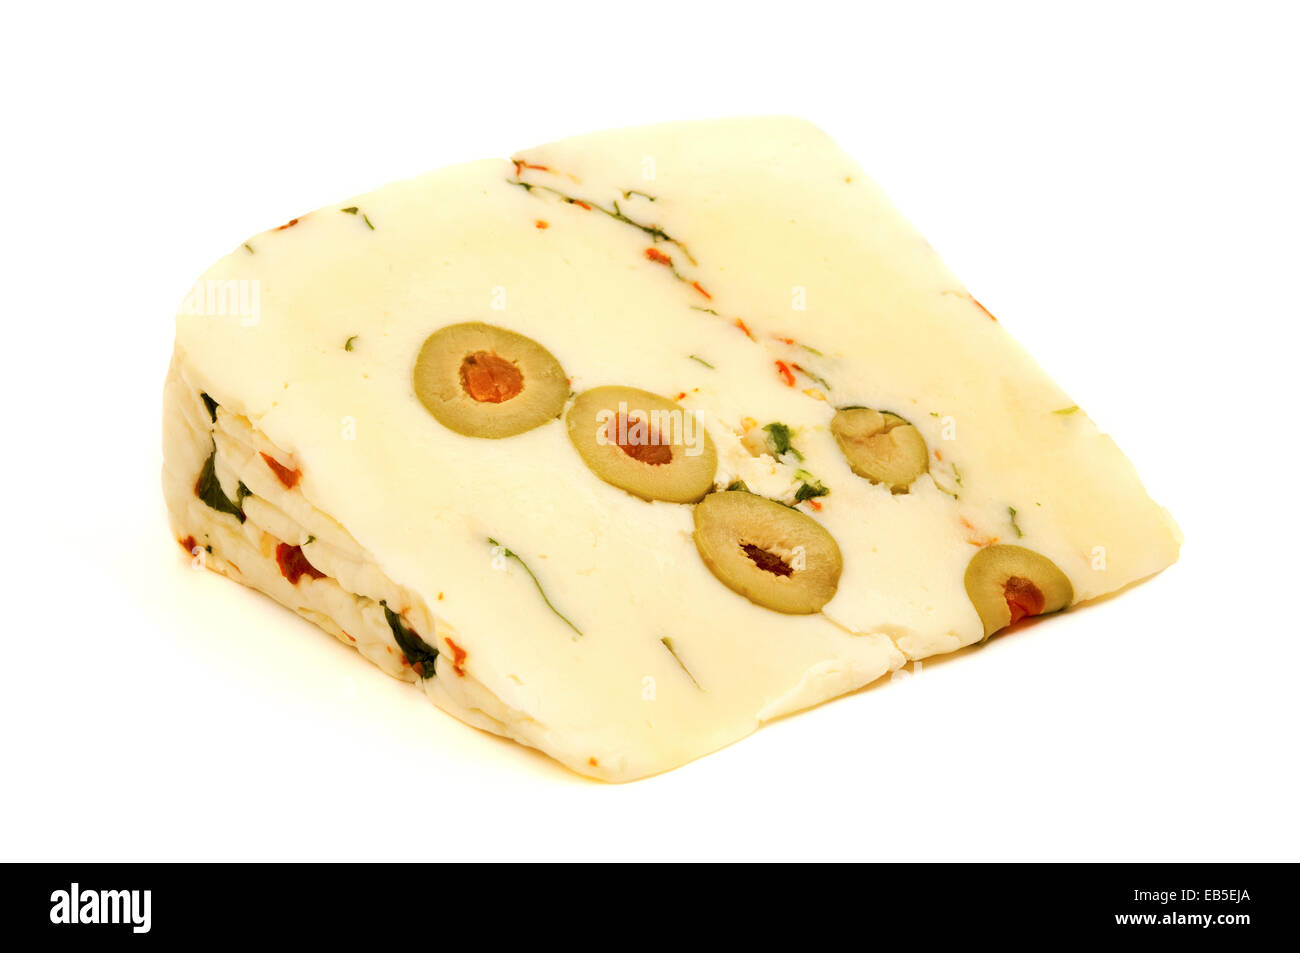 Pecoricco fromage sur un fond blanc Banque D'Images